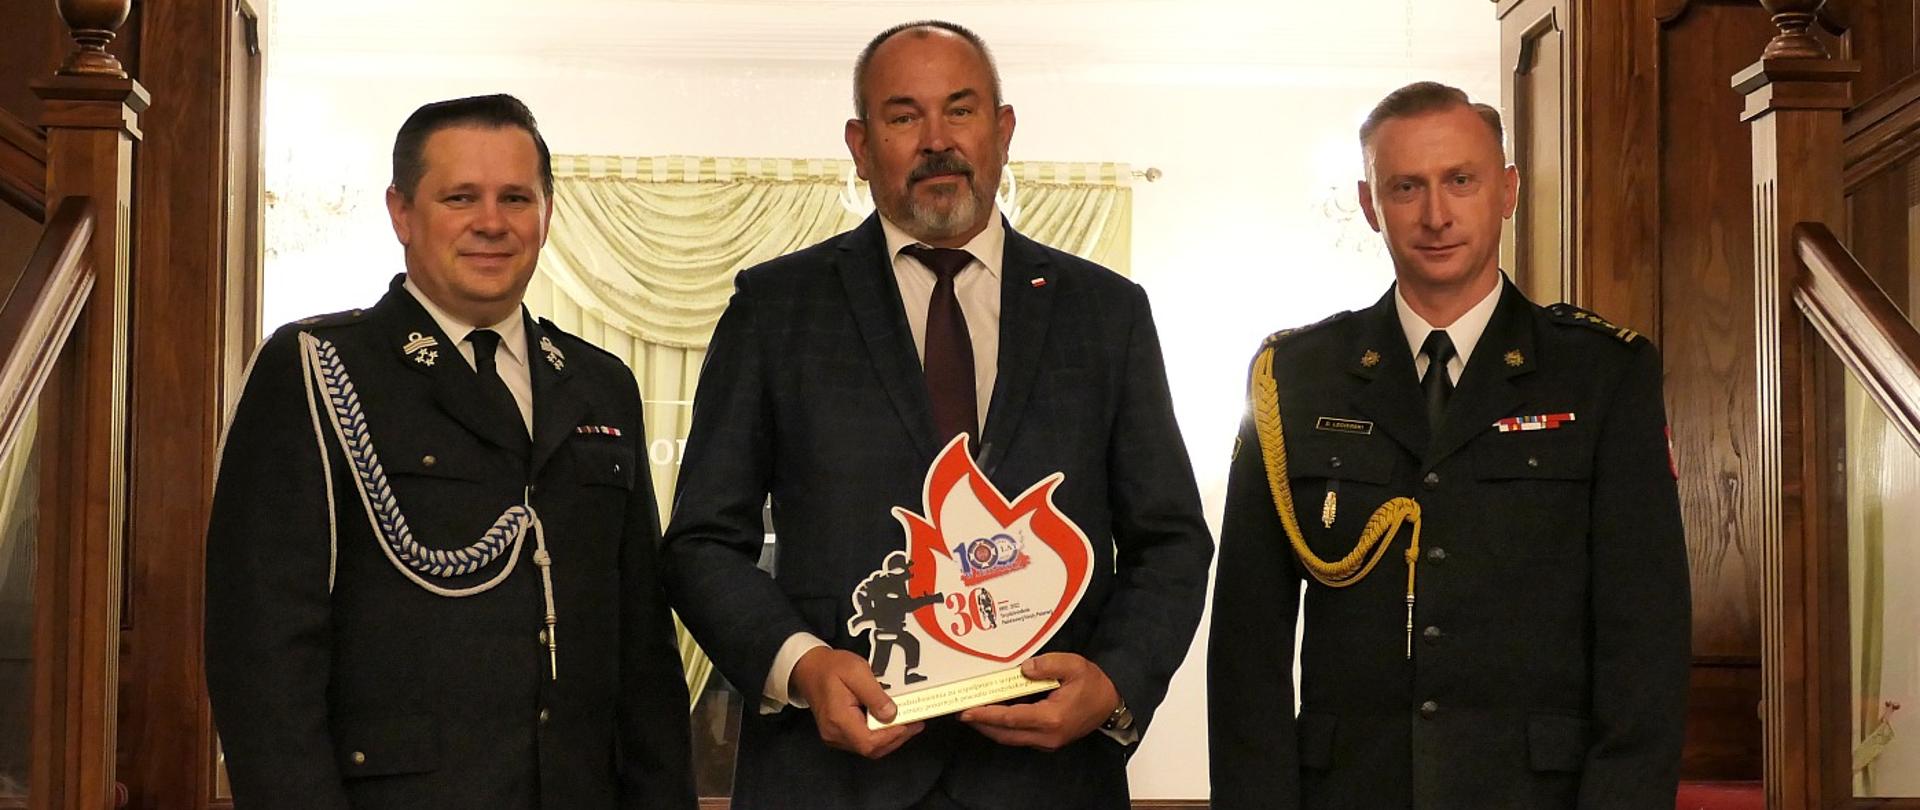 Uroczysta gala z okazji 30-lecia powołania Państwowej Straży Pożarnej oraz 100-lecia utworzenia Głównego Związku Straży Pożarnych RP